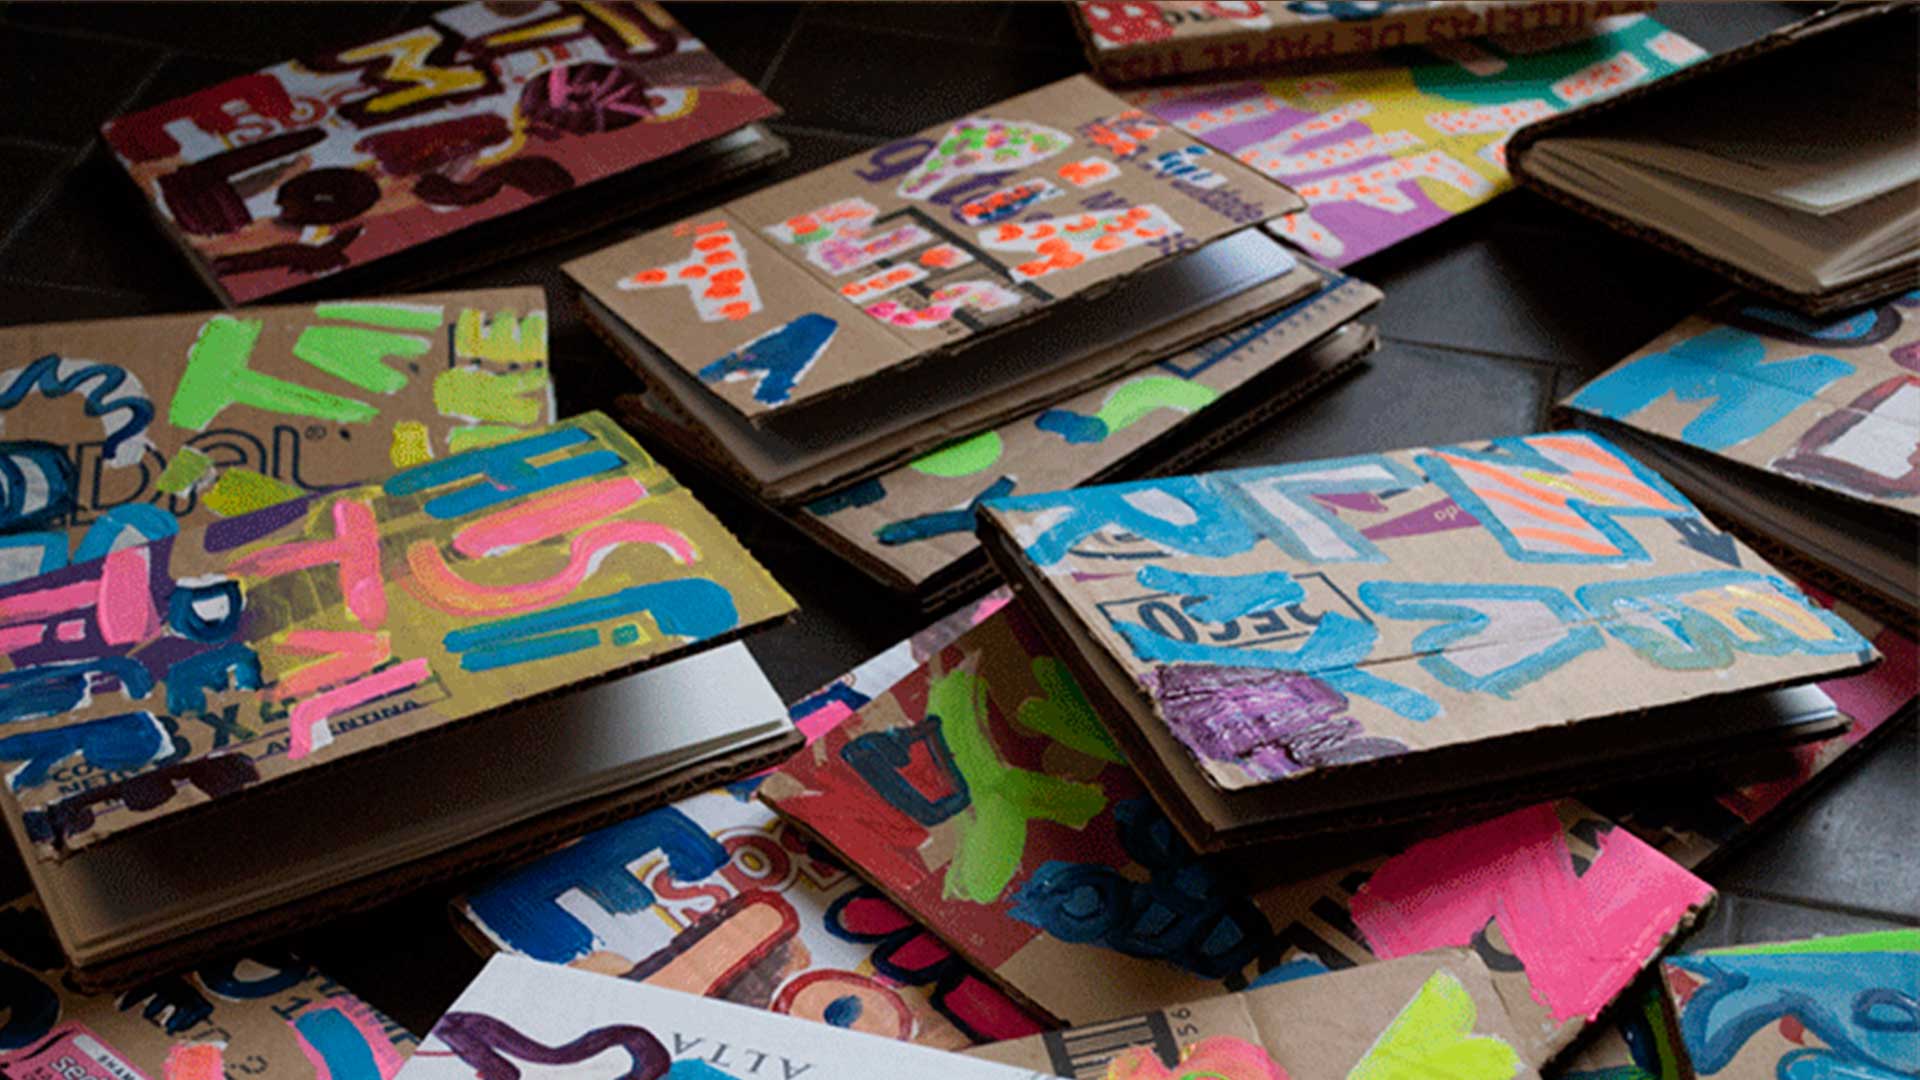 Sueños de cartón: las cajas que desechamos se convierten en libros con Eloísa Cartonera